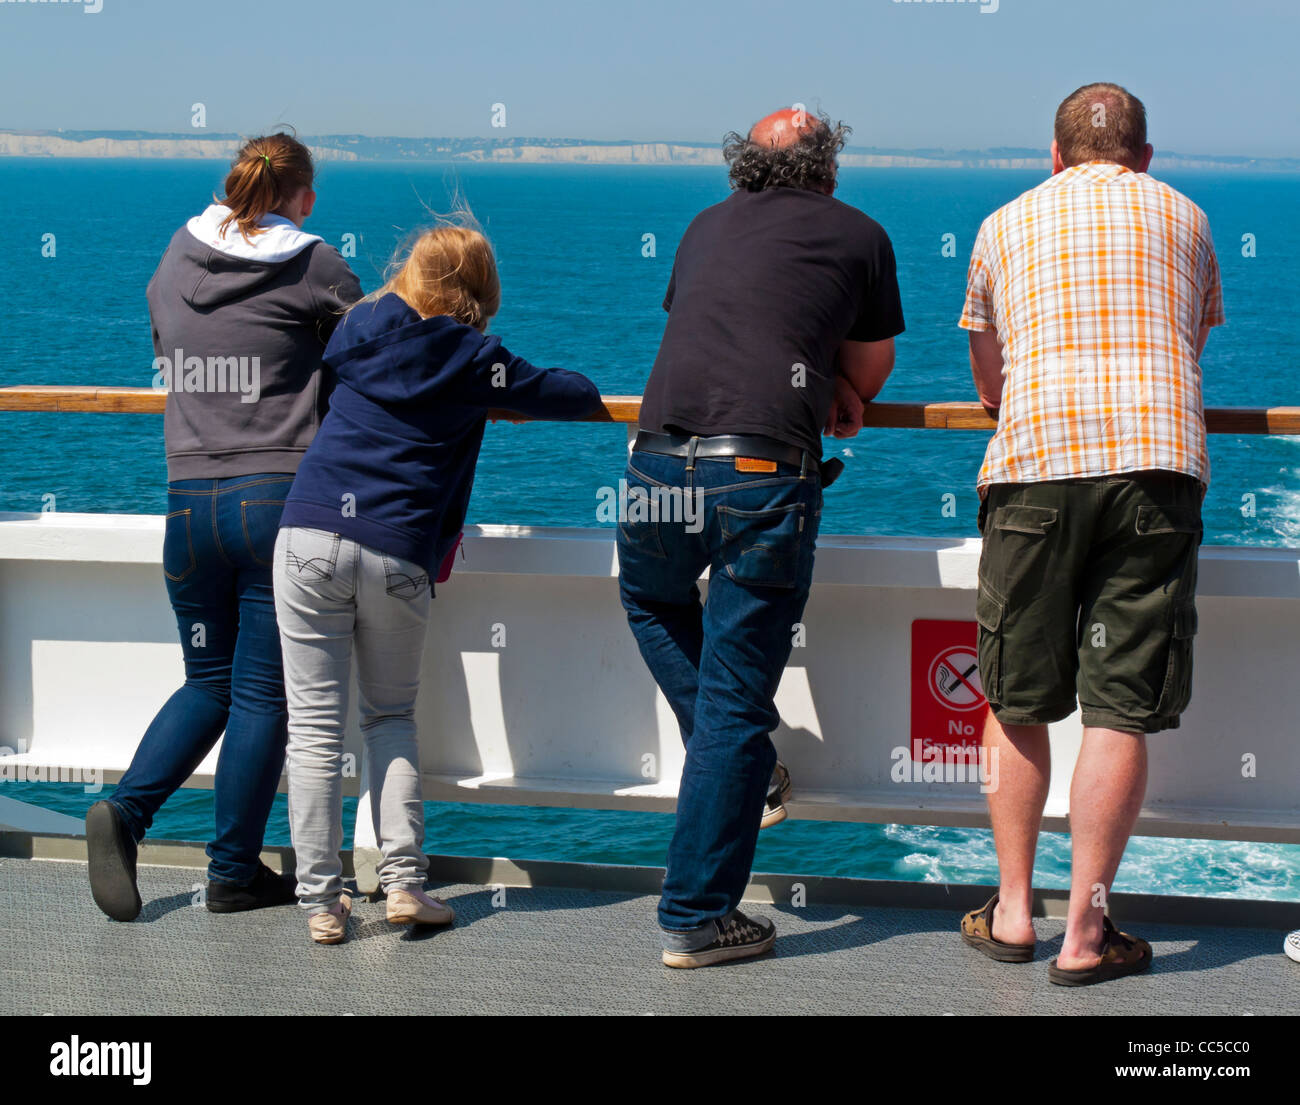 Les passagers d'un ferry transmanche voyageant entre l'Angleterre et la France à la recherche à la falaises blanches de la côte britannique Banque D'Images